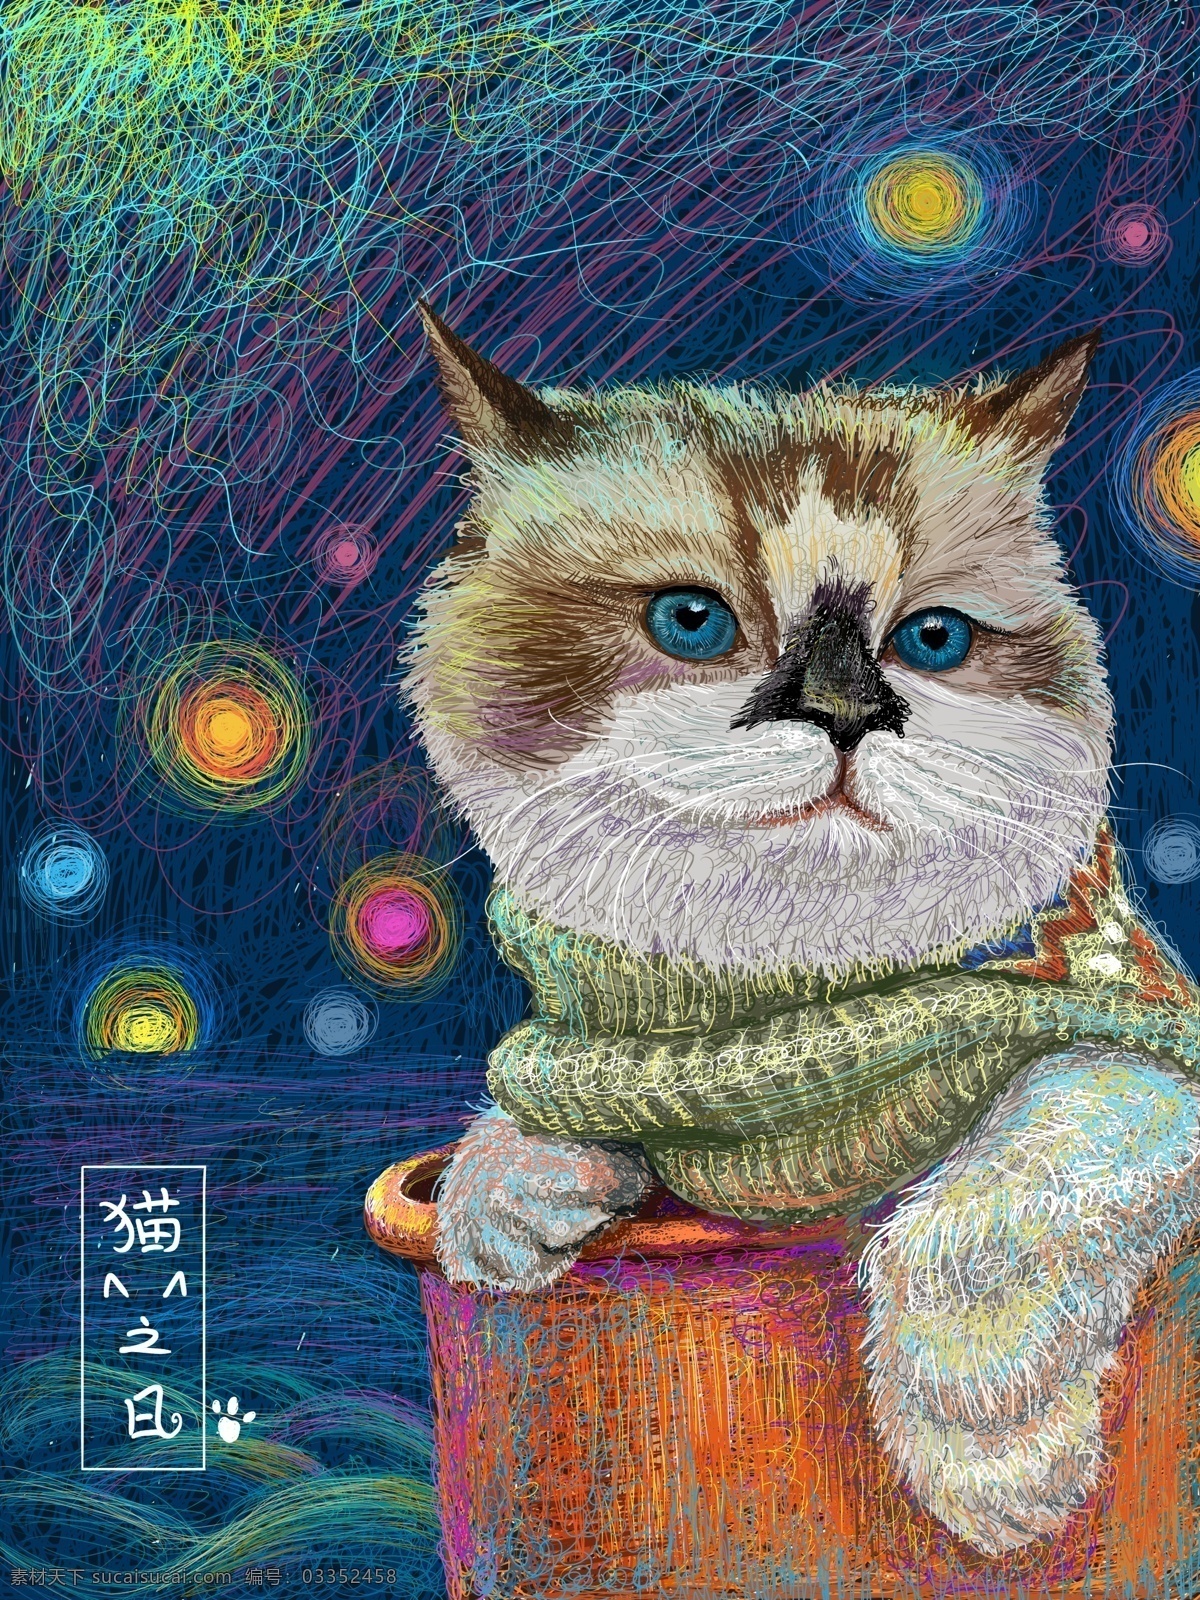 猫 日 治愈 系 插画 极光 海面 上 围着 围巾 蓝色 星光 可爱 猫之日 治愈系 线圈插画 配图